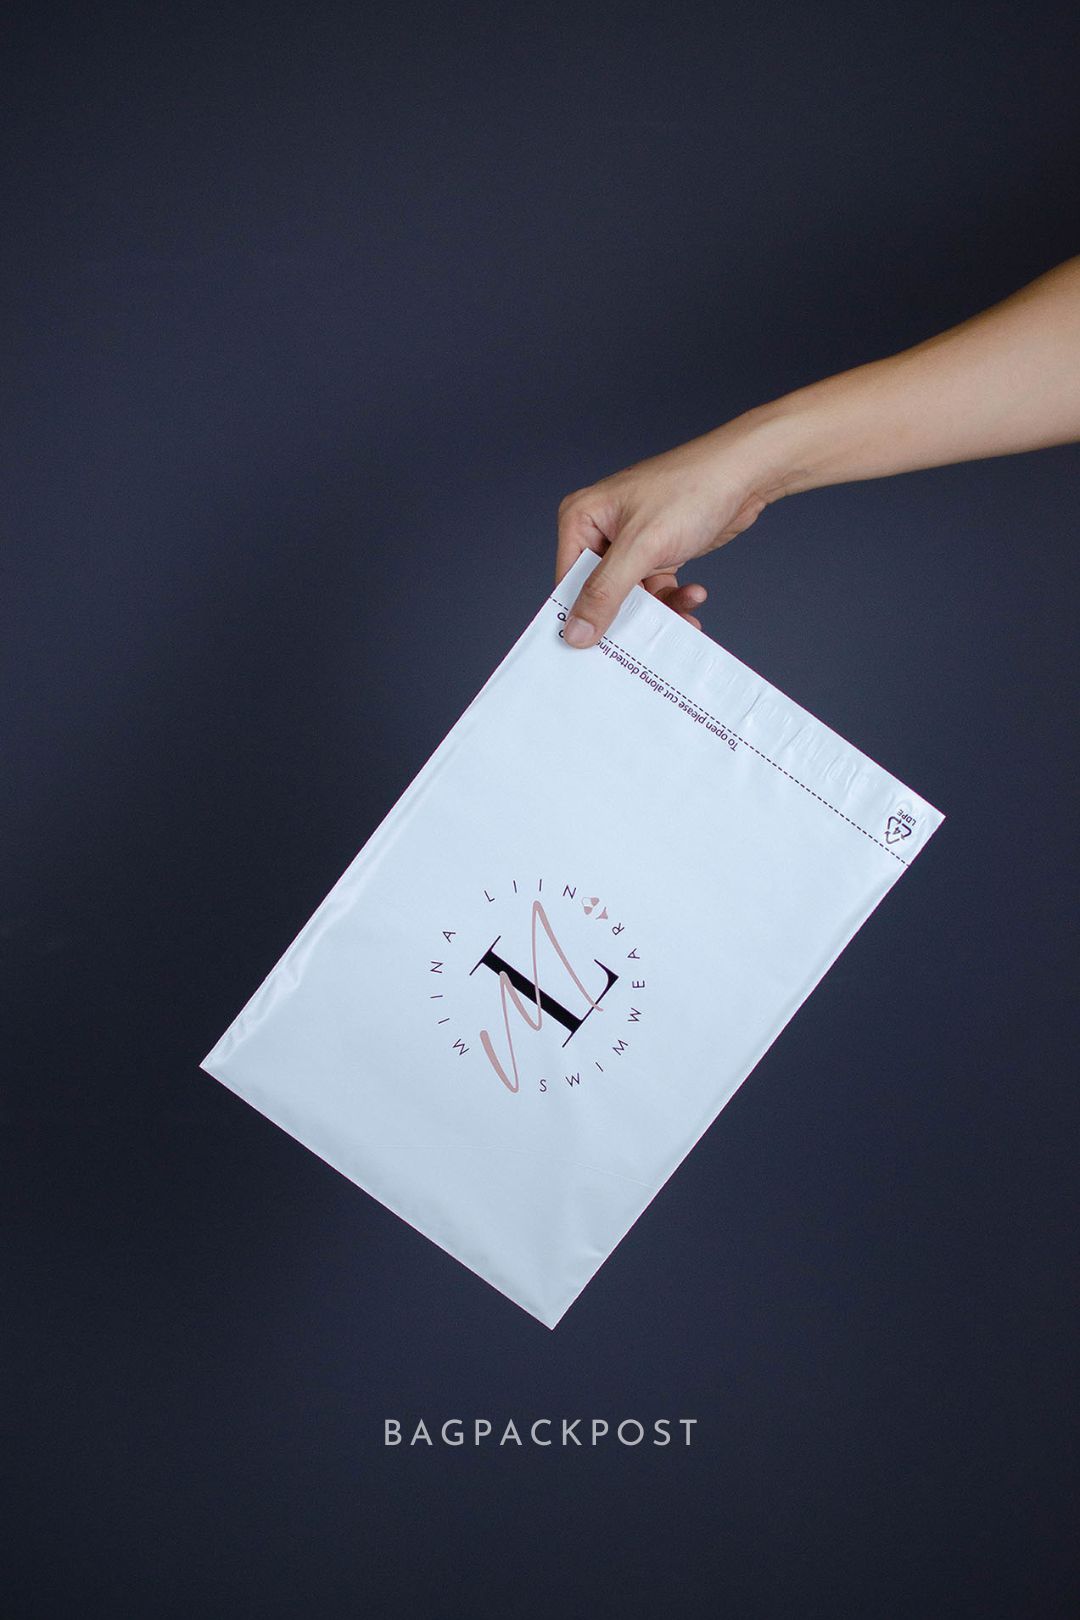 ผลิตถุงไปรษณีย์ ซองไปรษณีย์พิมพ์ลาย Miinaliin ซองไปรษณีย์สีขาว ถุงไปรษณีย์พิมพ์ลาย 1 BagPackPost